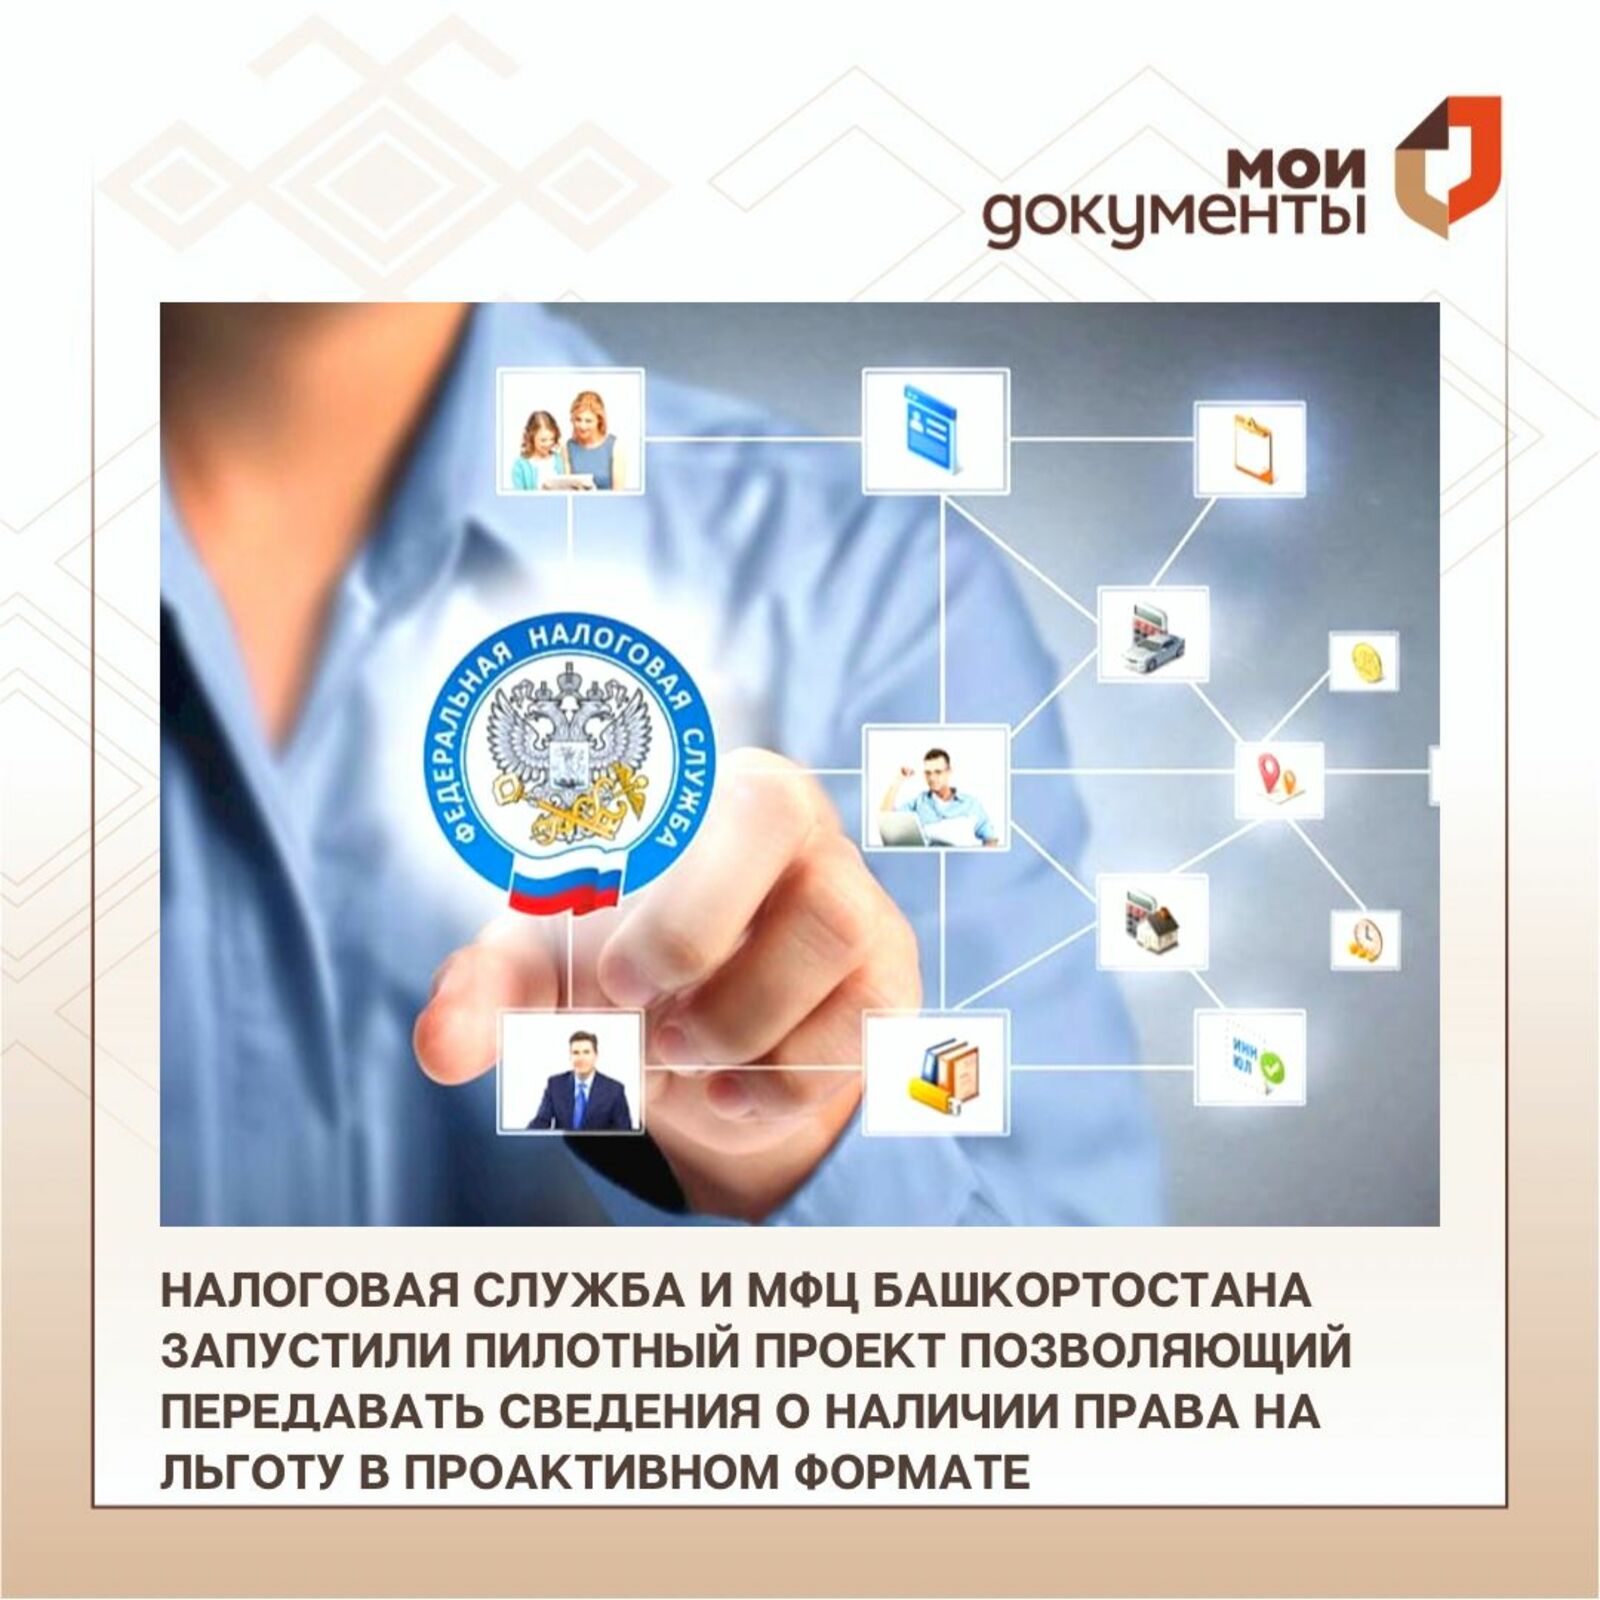 Налоговая служба и МФЦ Башкирии запустили пилотный проект в проактивном формате